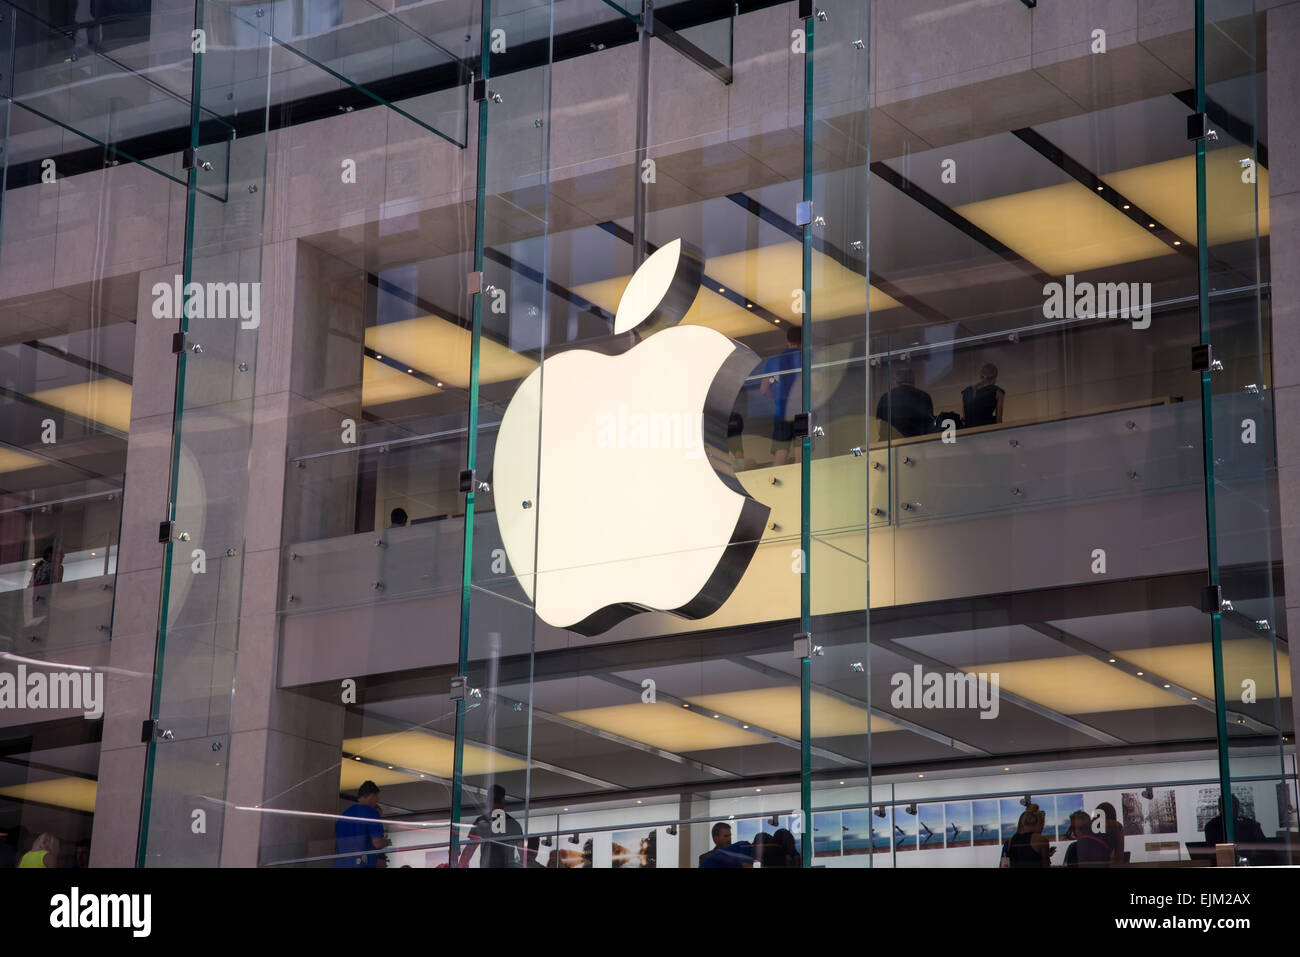 SYDNEY, Australia - 2 febbraio 2015: dettaglio da Apple shop a Sidney in Australia. Apple è multinazionale americana f Foto Stock